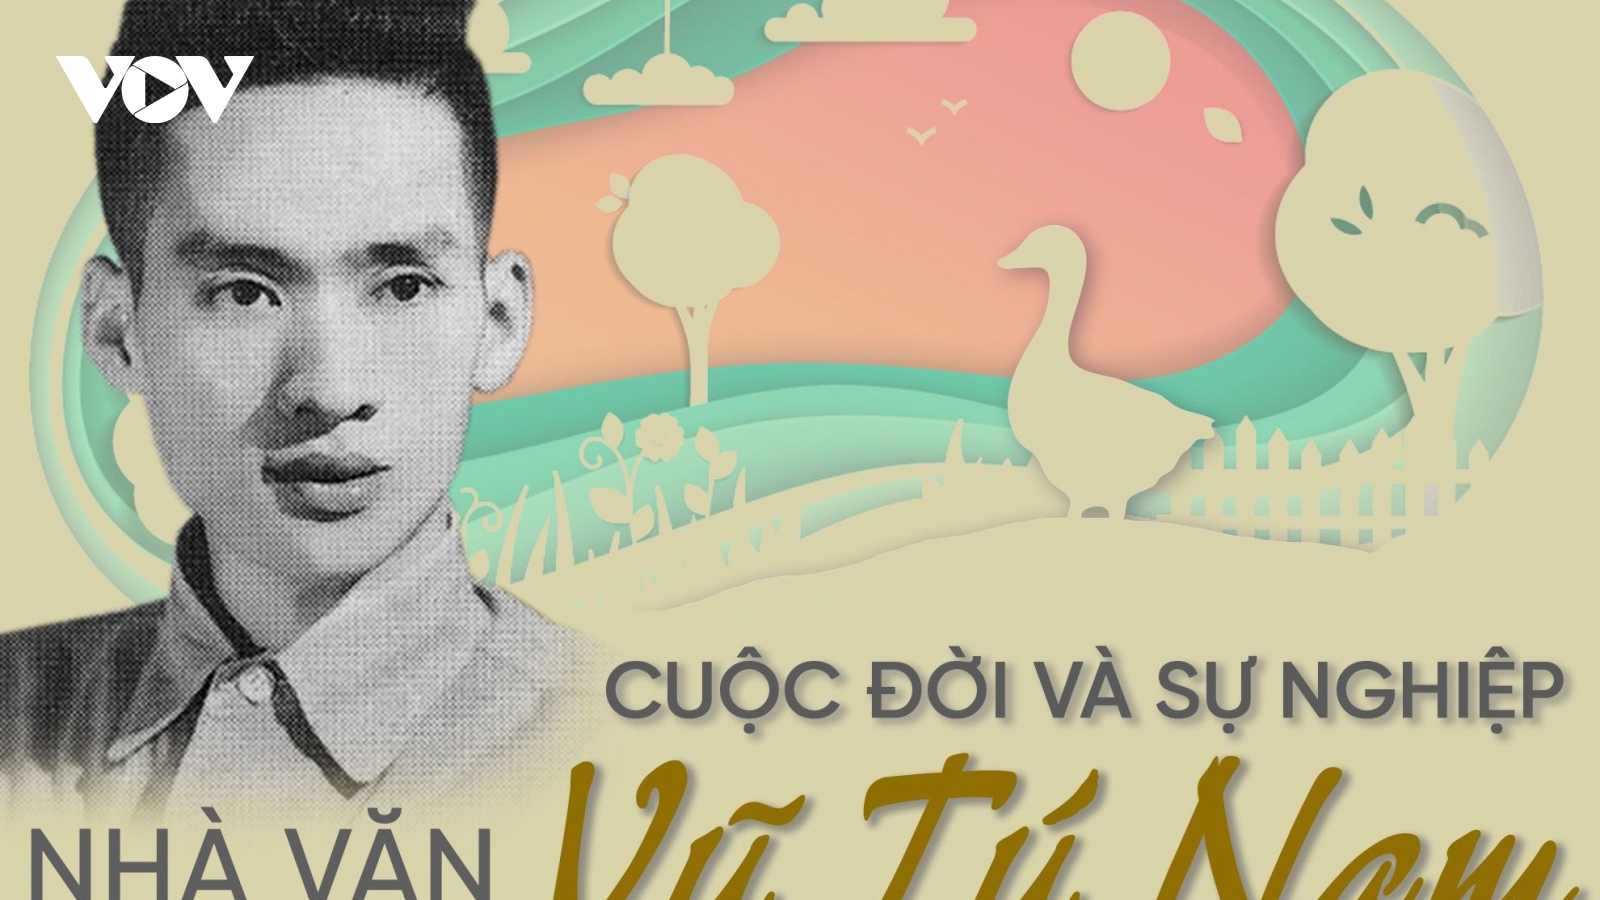 Cuộc đời và sự nghiệp của nhà văn Vũ Tú Nam